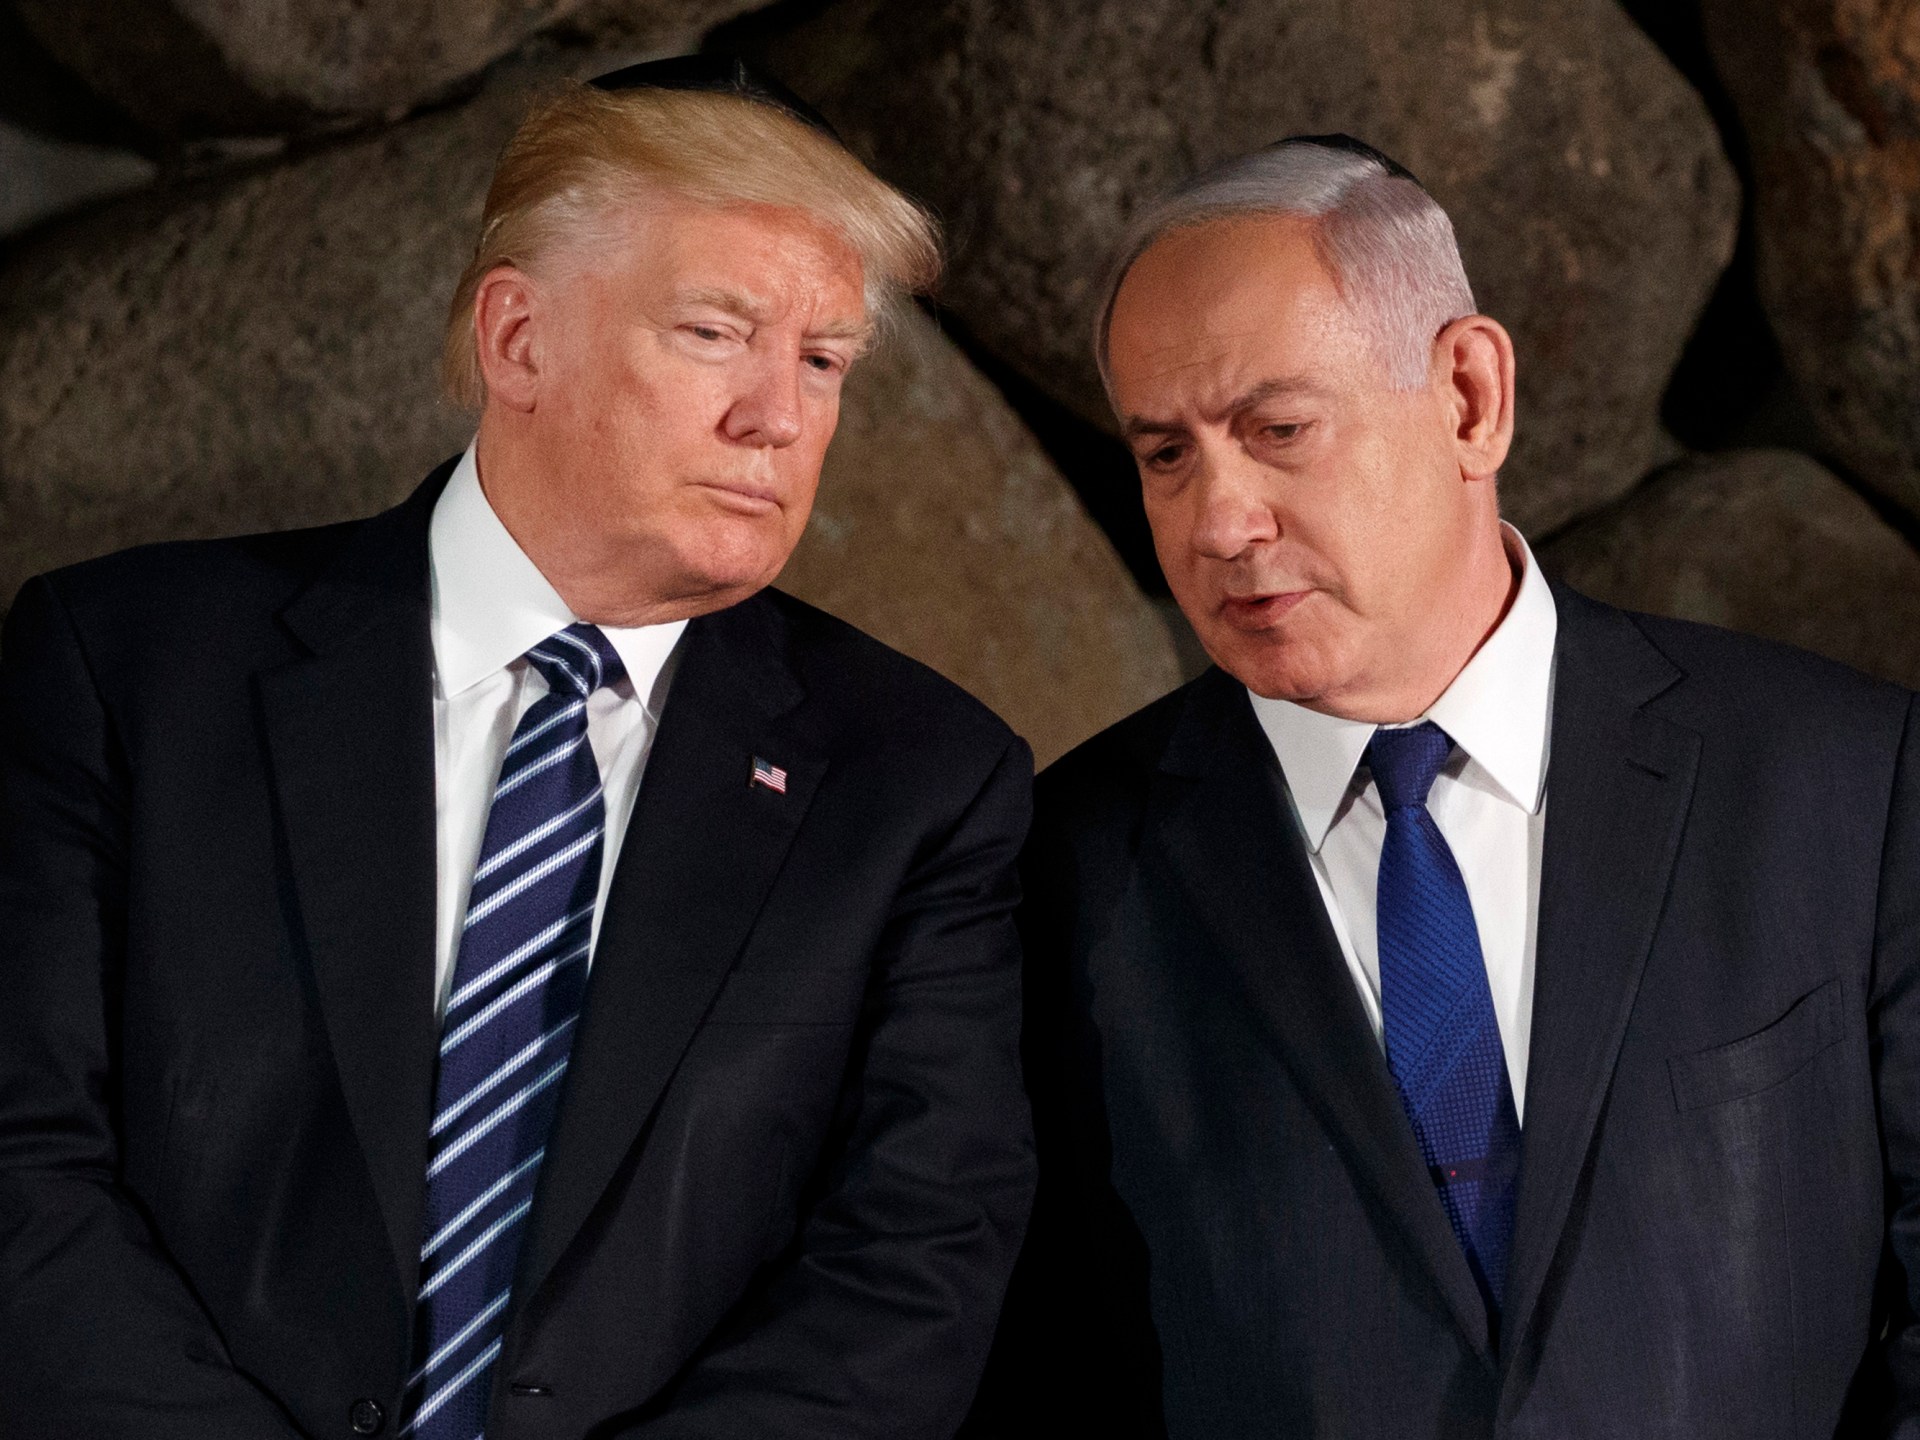 Trump hovorí, že Izrael, ktorý prehrá PR vojnu v Gaze, musí vojnu „rýchlo“ ukončiť |  Správy o izraelskej vojne v Gaze